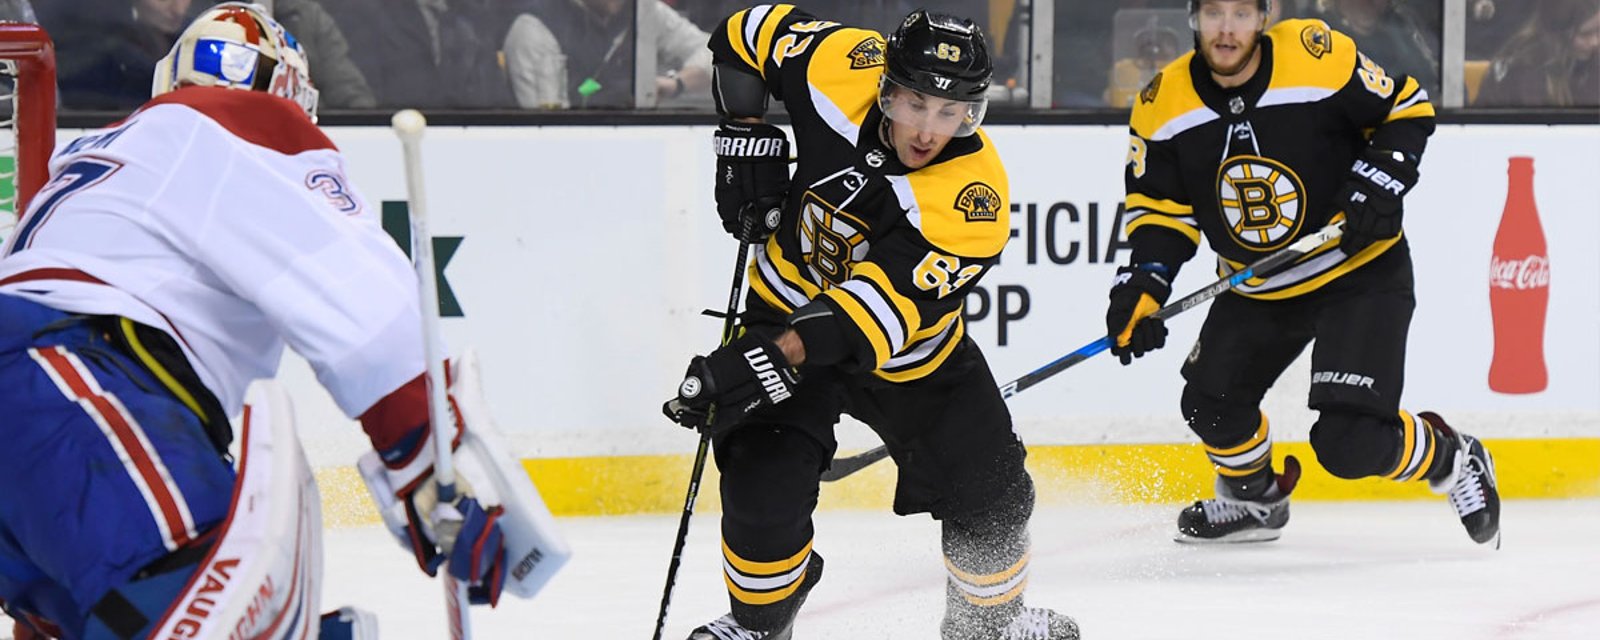 Breaking: Worrisome report from Bruins' morning skate